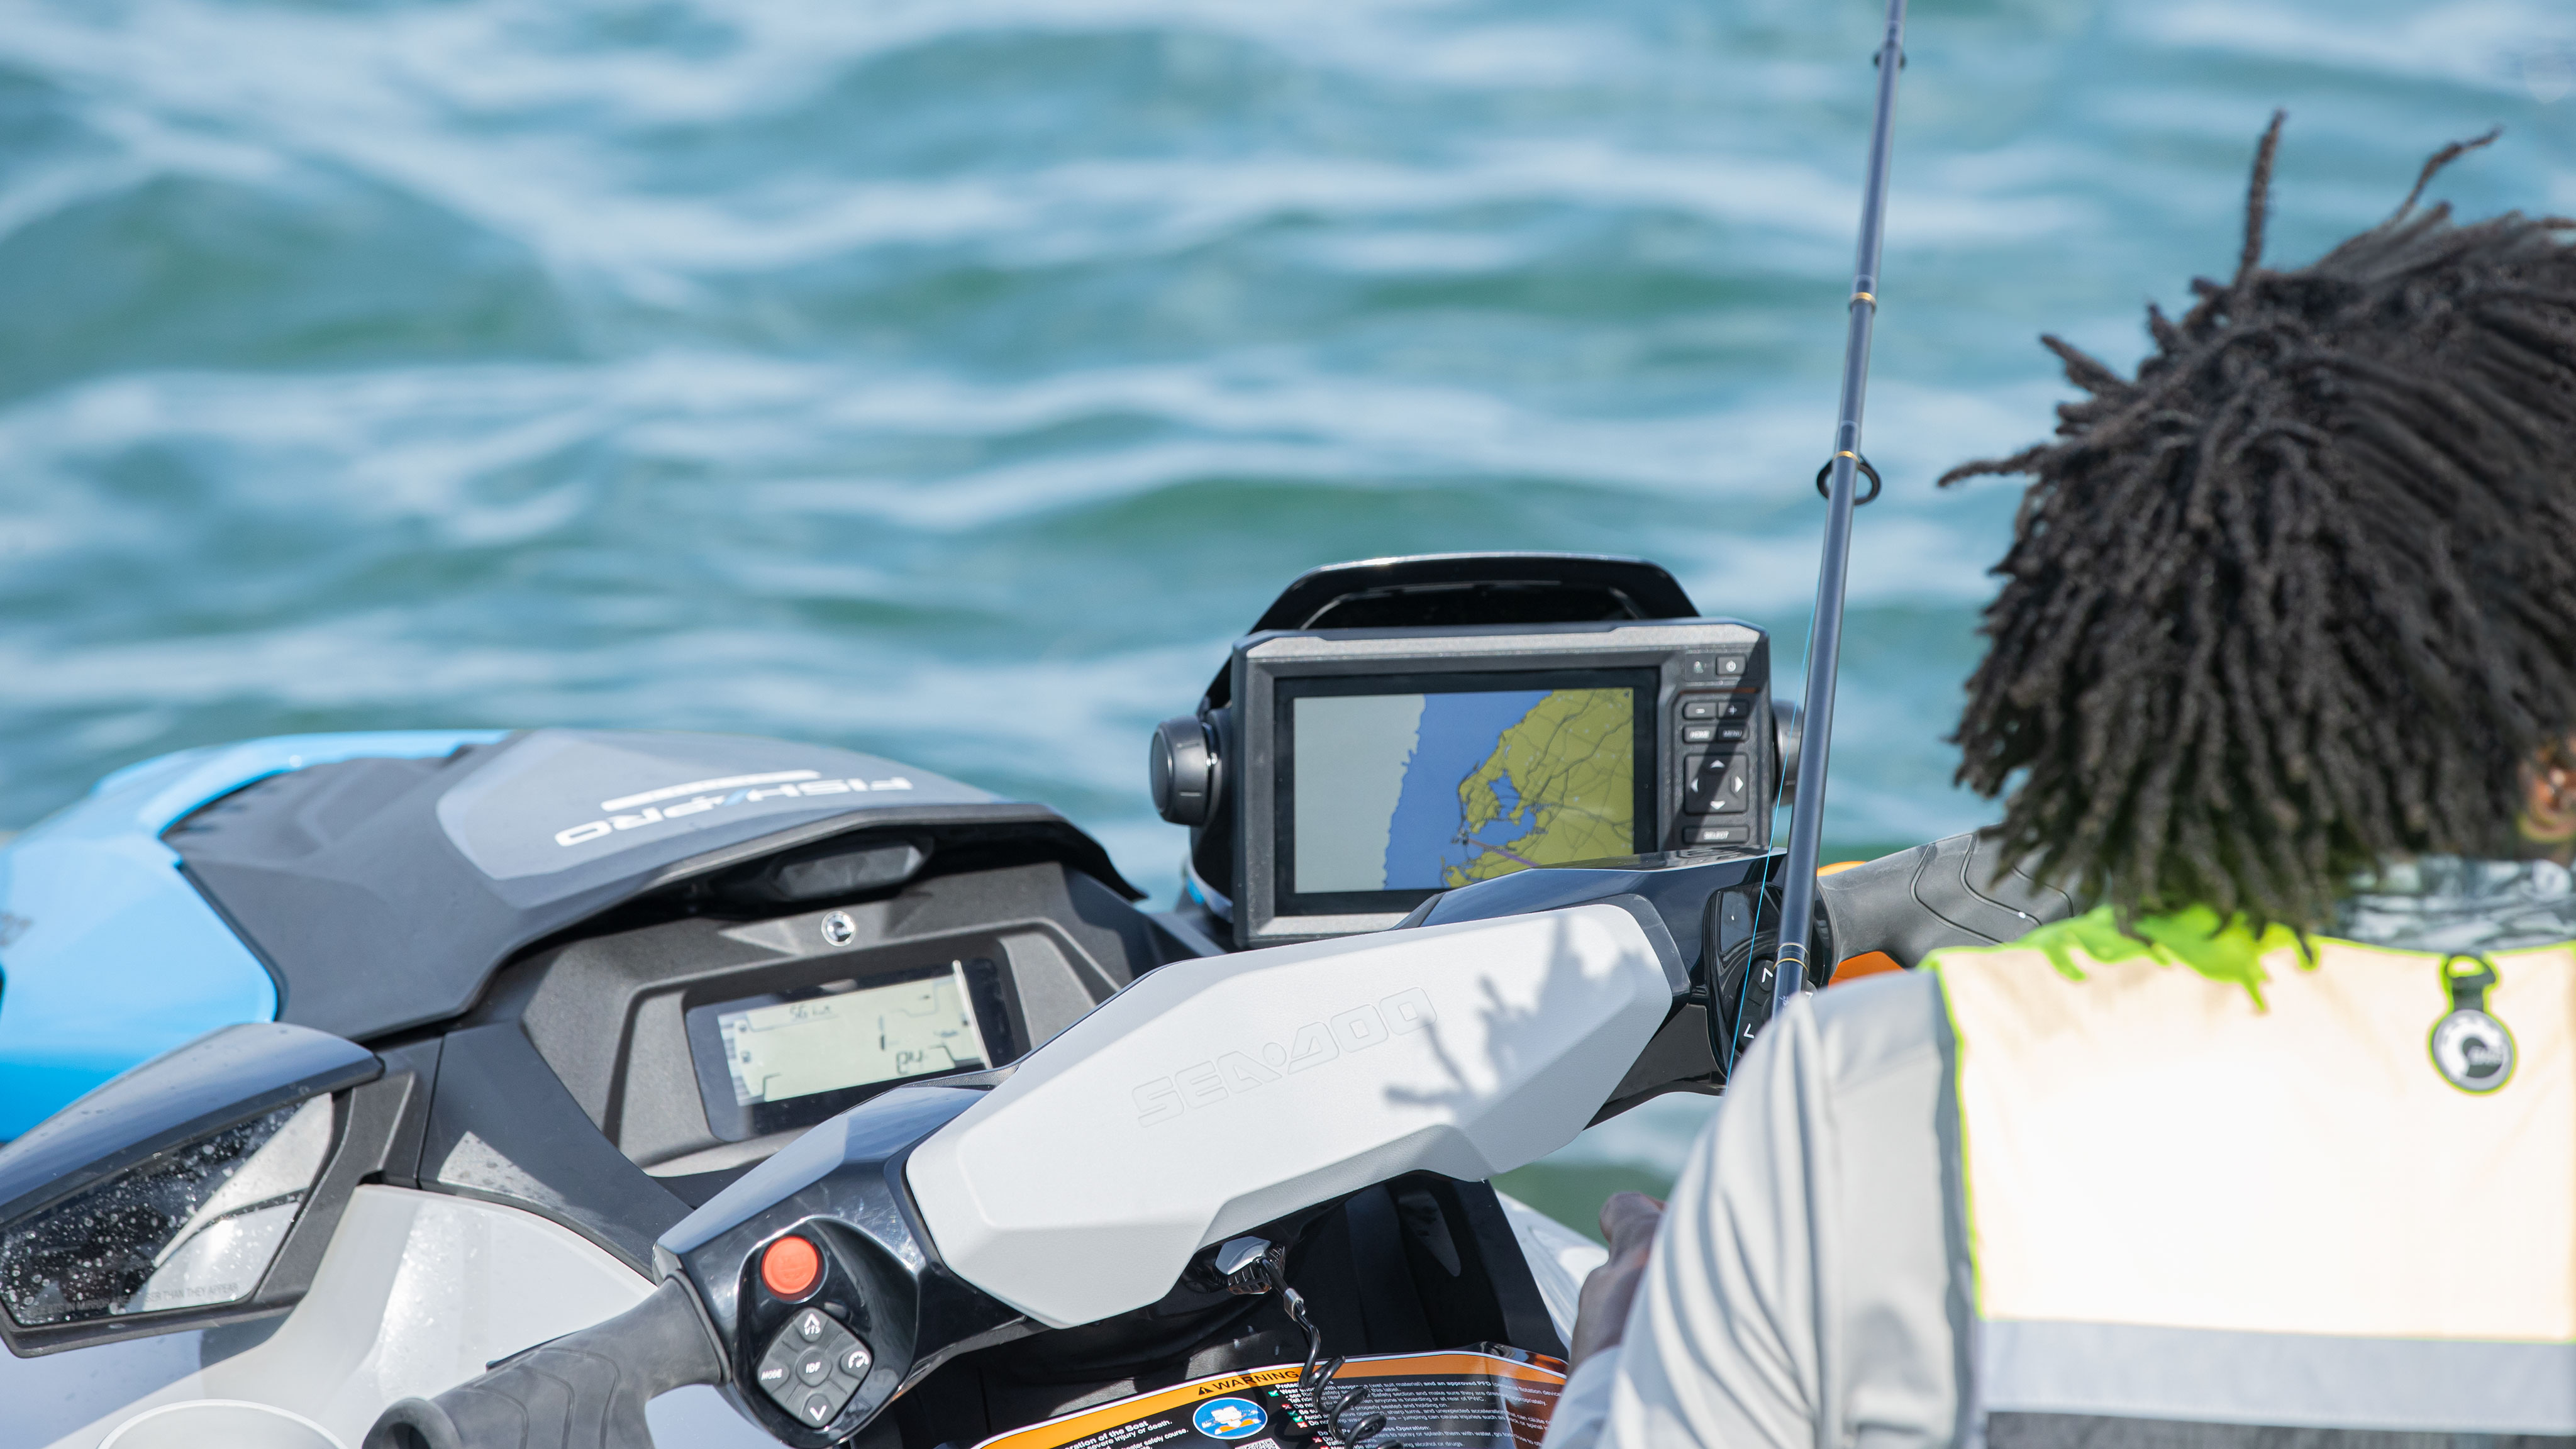 Garmin navigation and fish finder